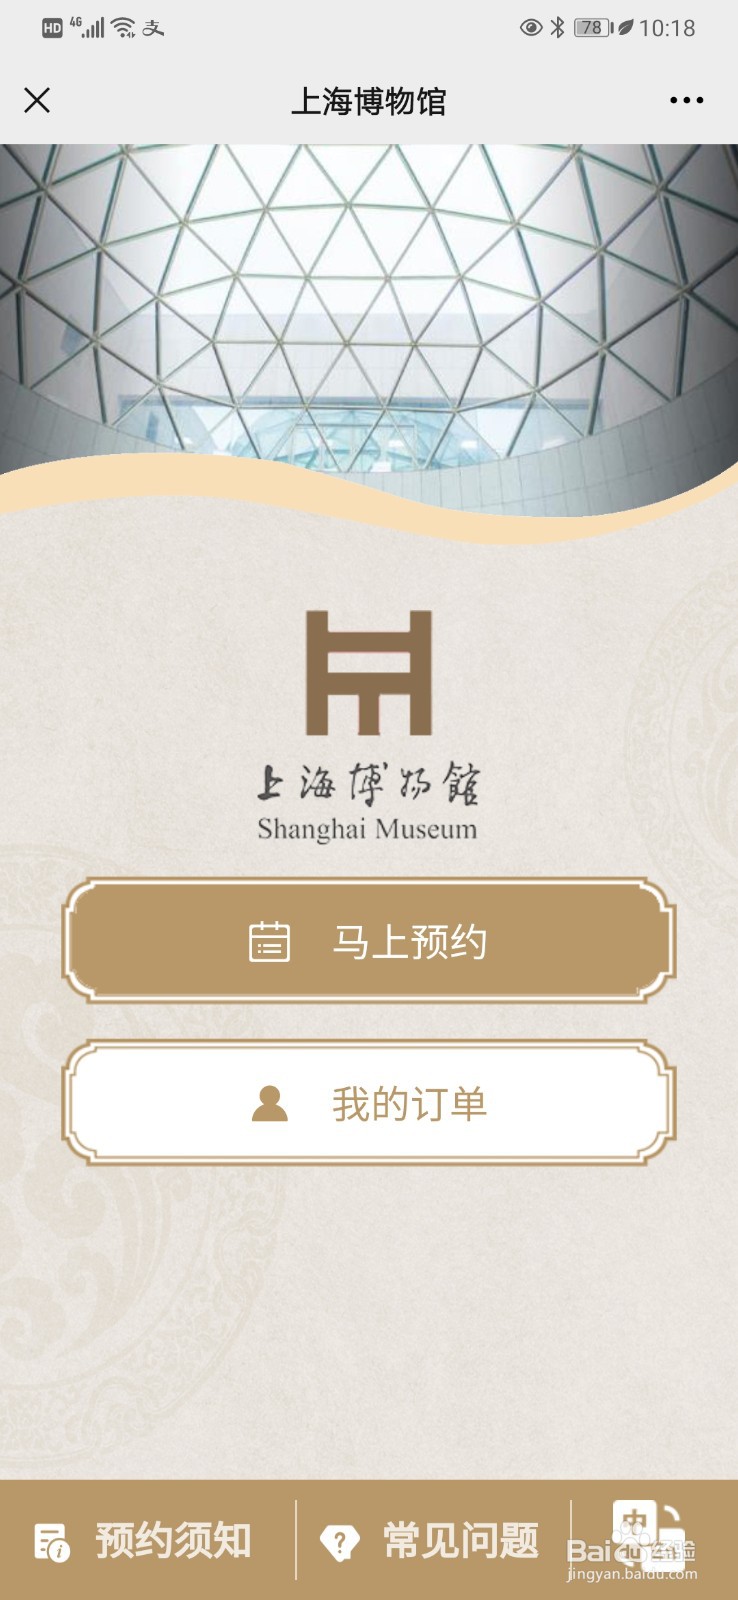 如何预约参观上海博物馆的门票